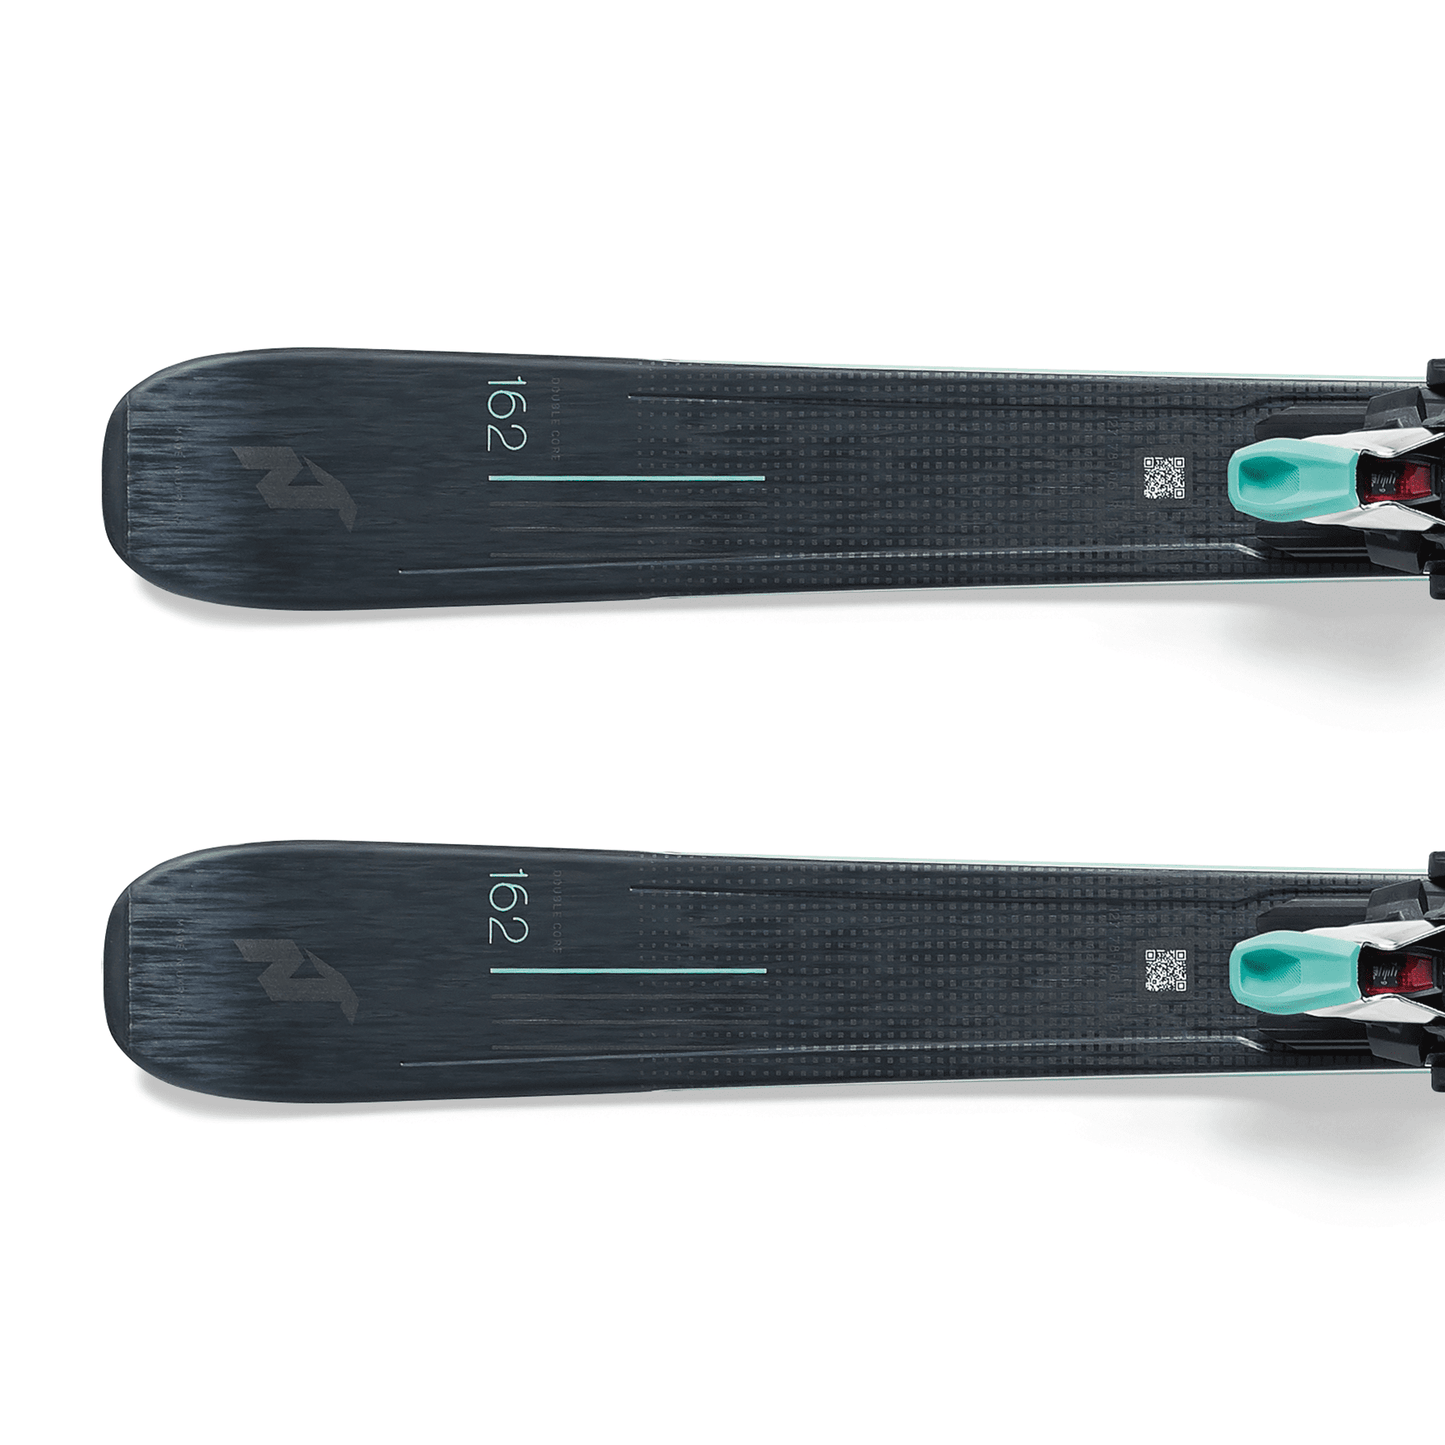 Nordica Belle DC 78 Women's Skis Inc TP2 Light 11 Bindings (2022)